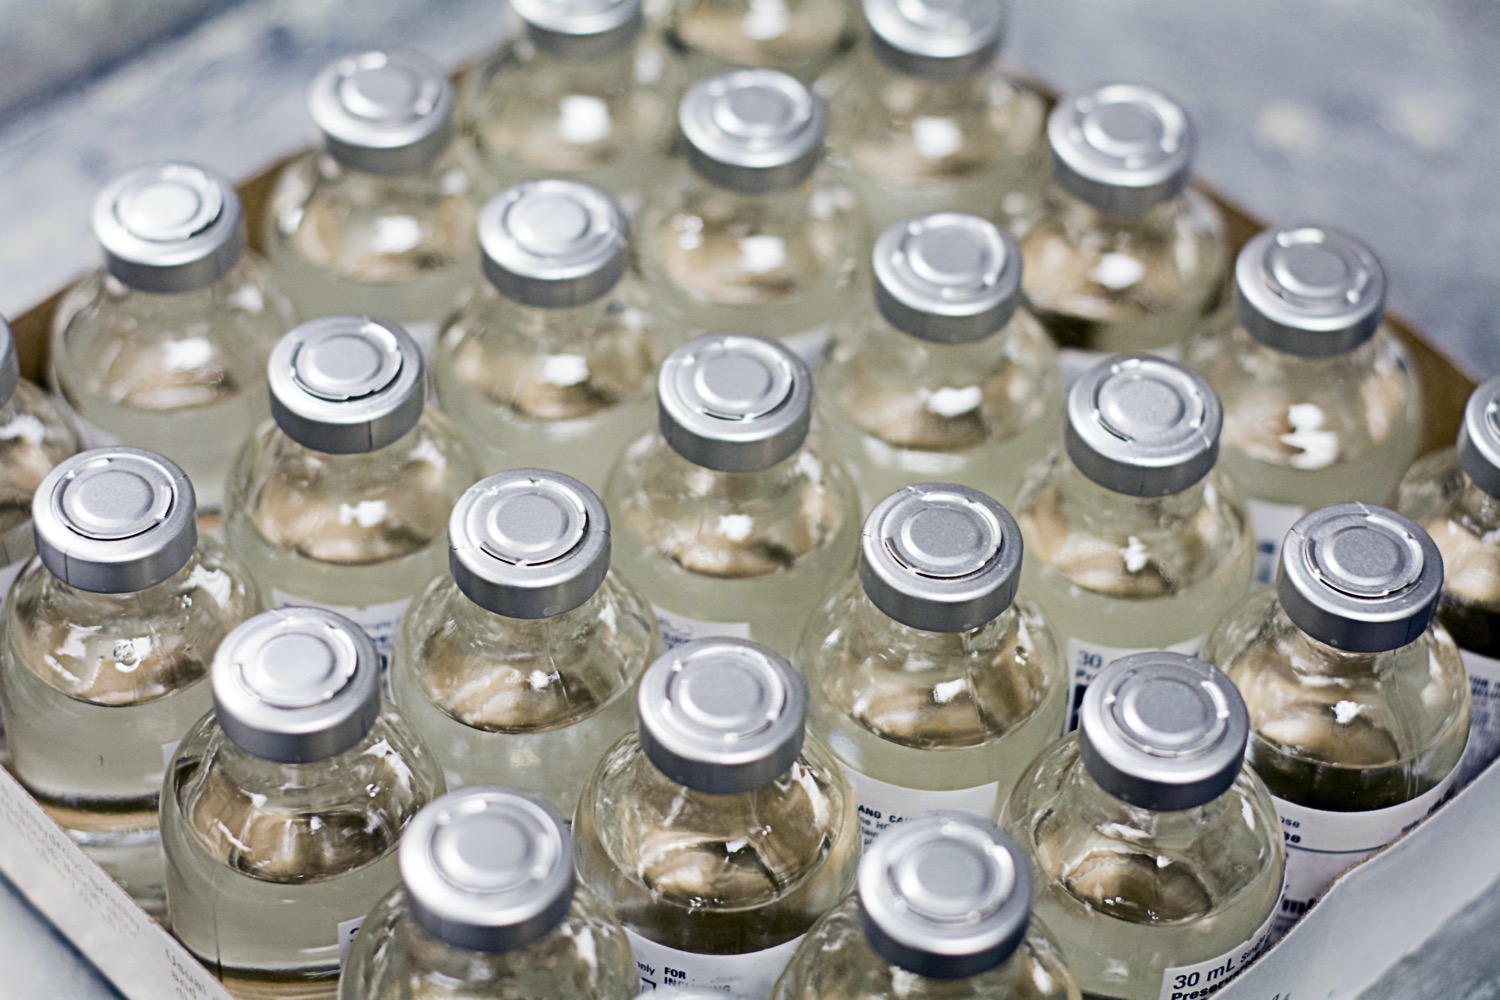 a box of over a dozen vaccine vials